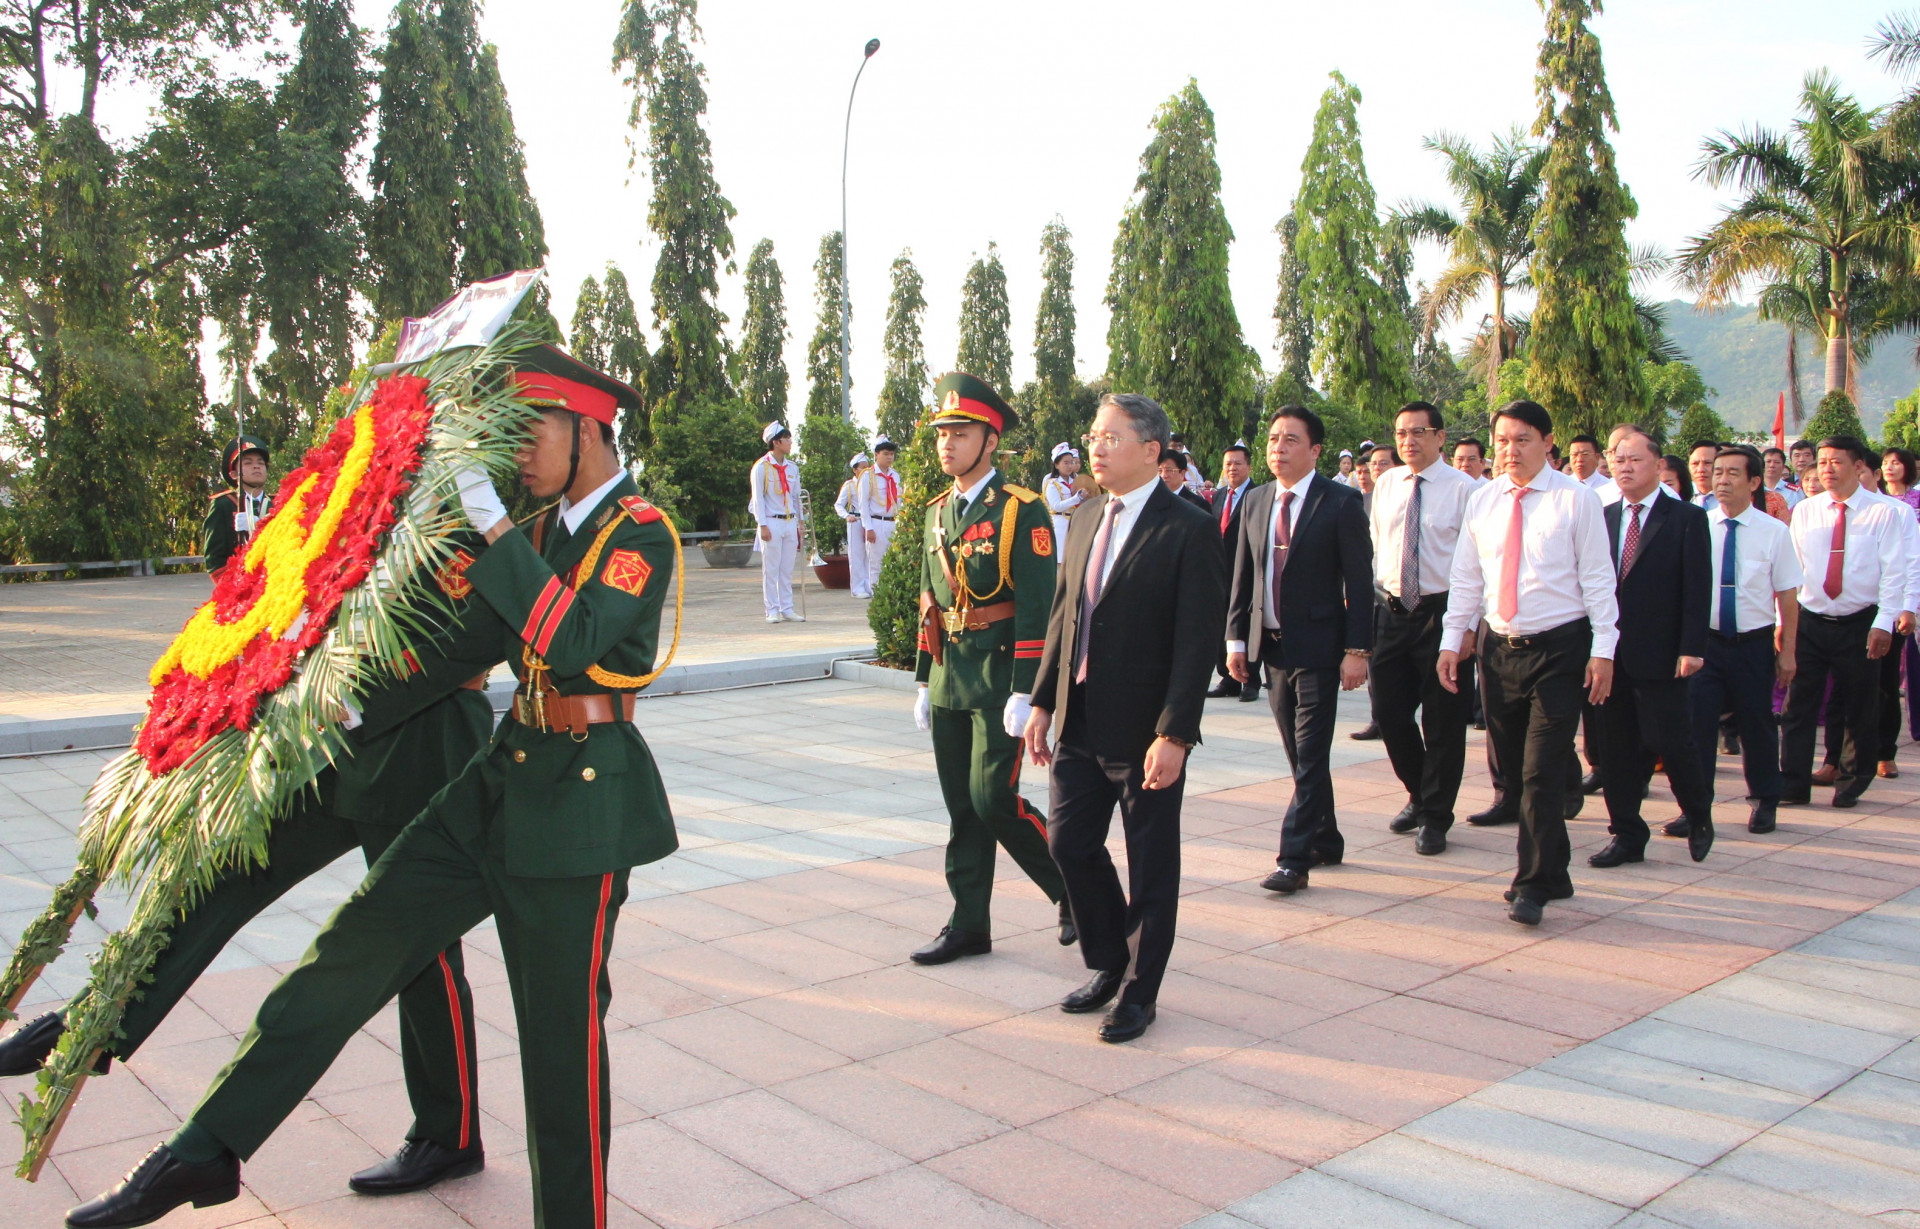 Đoàn đại biểu của Ban Chấp hành Đảng bộ tỉnh do đồng chí Nguyễn Hải Ninh dẫn đầu vào viếng.